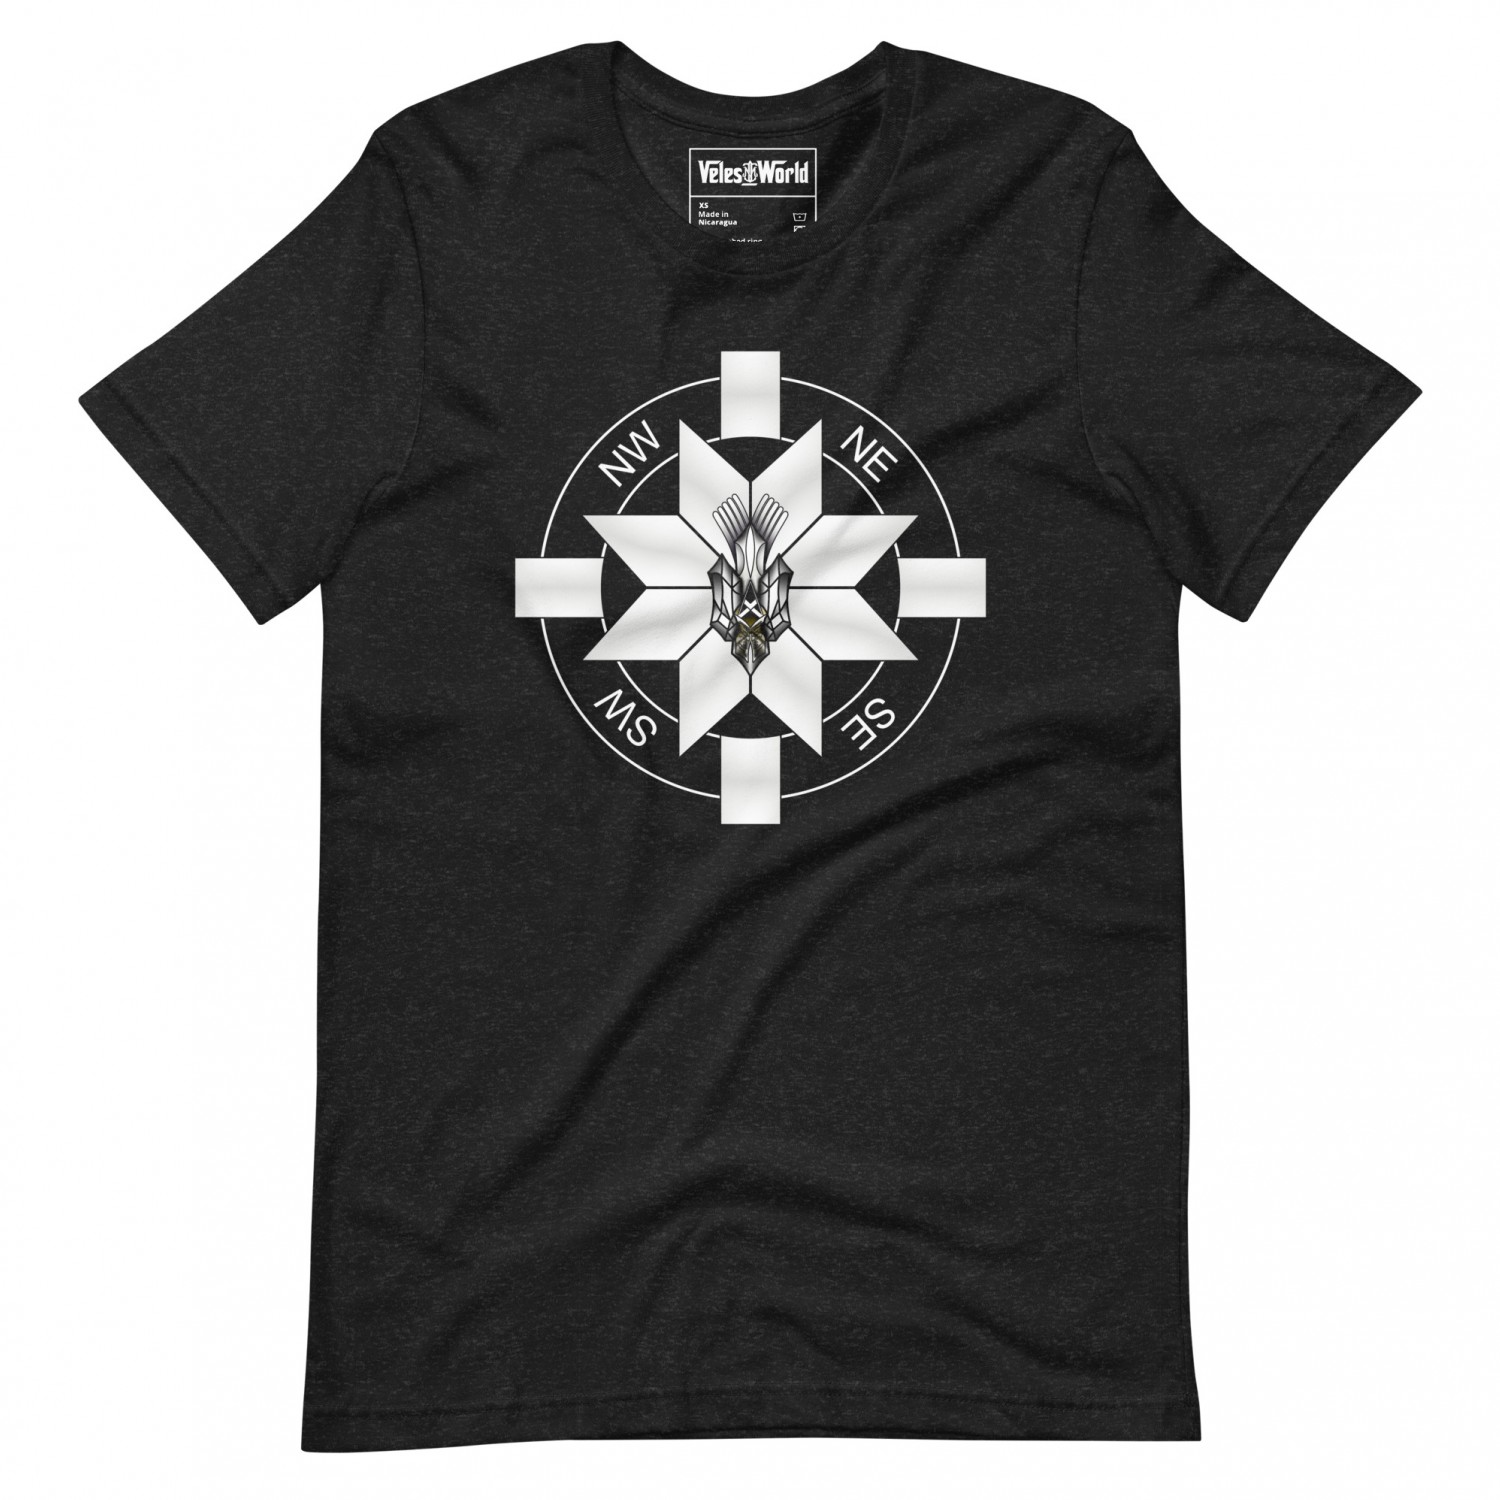 Купити футболку Слов'янський компас з тризубом